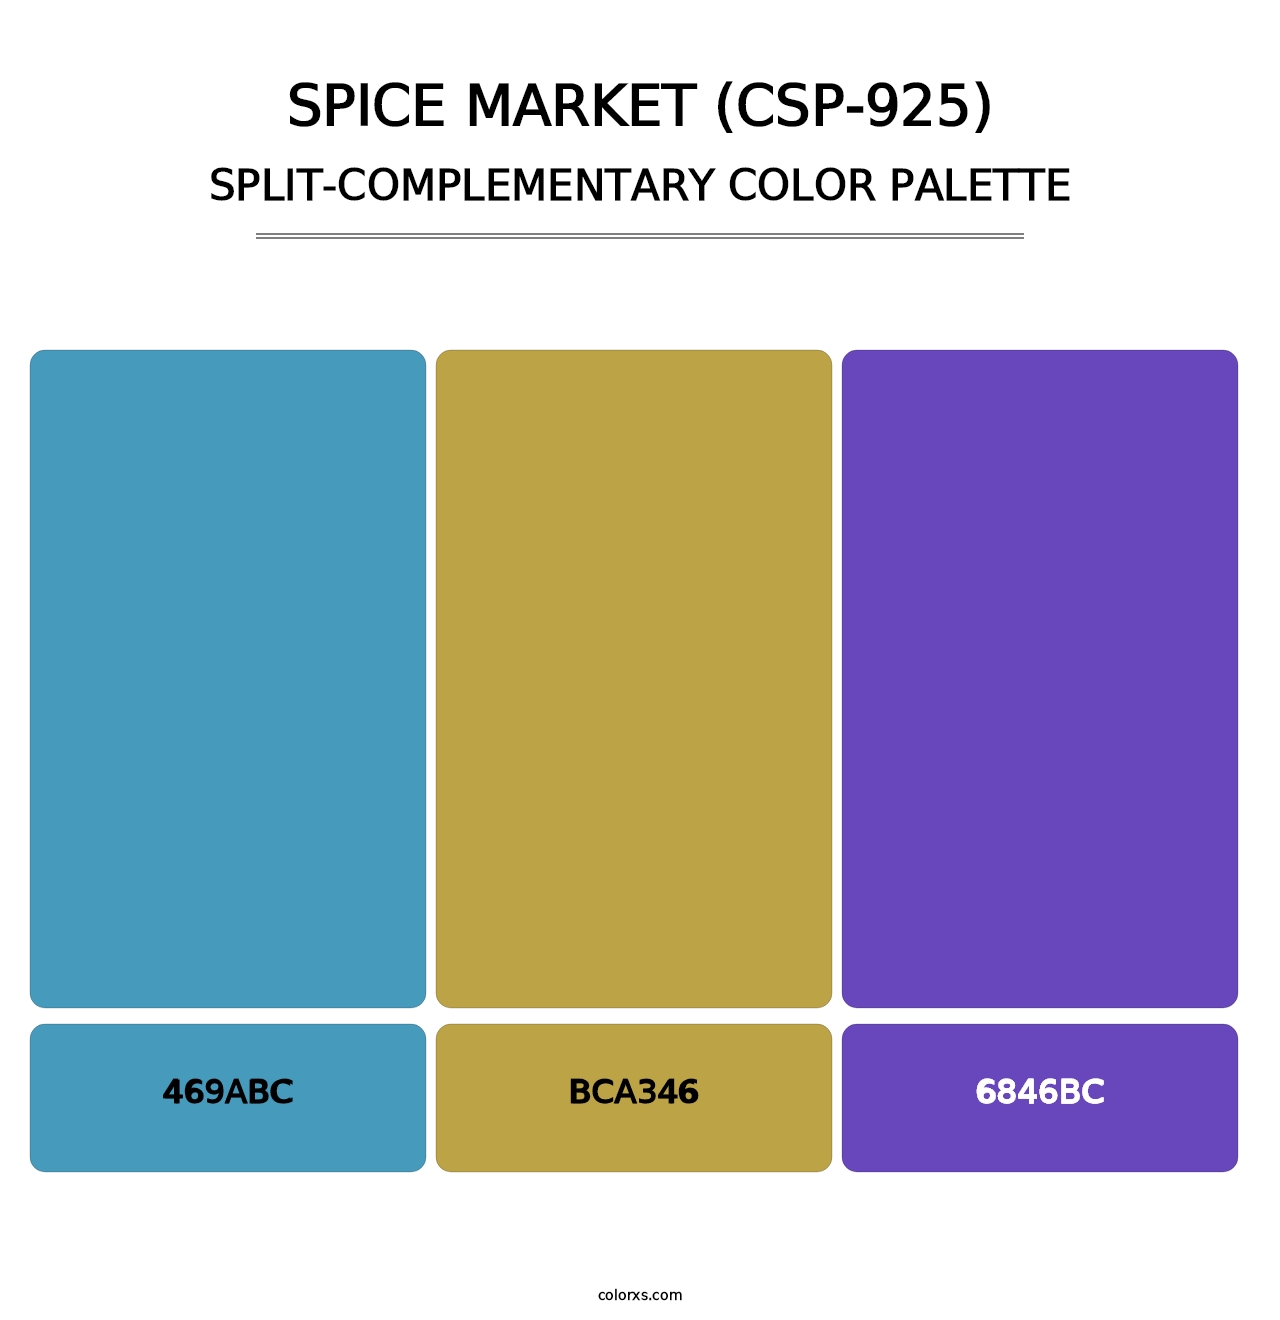 Spice Market (CSP-925) - Split-Complementary Color Palette